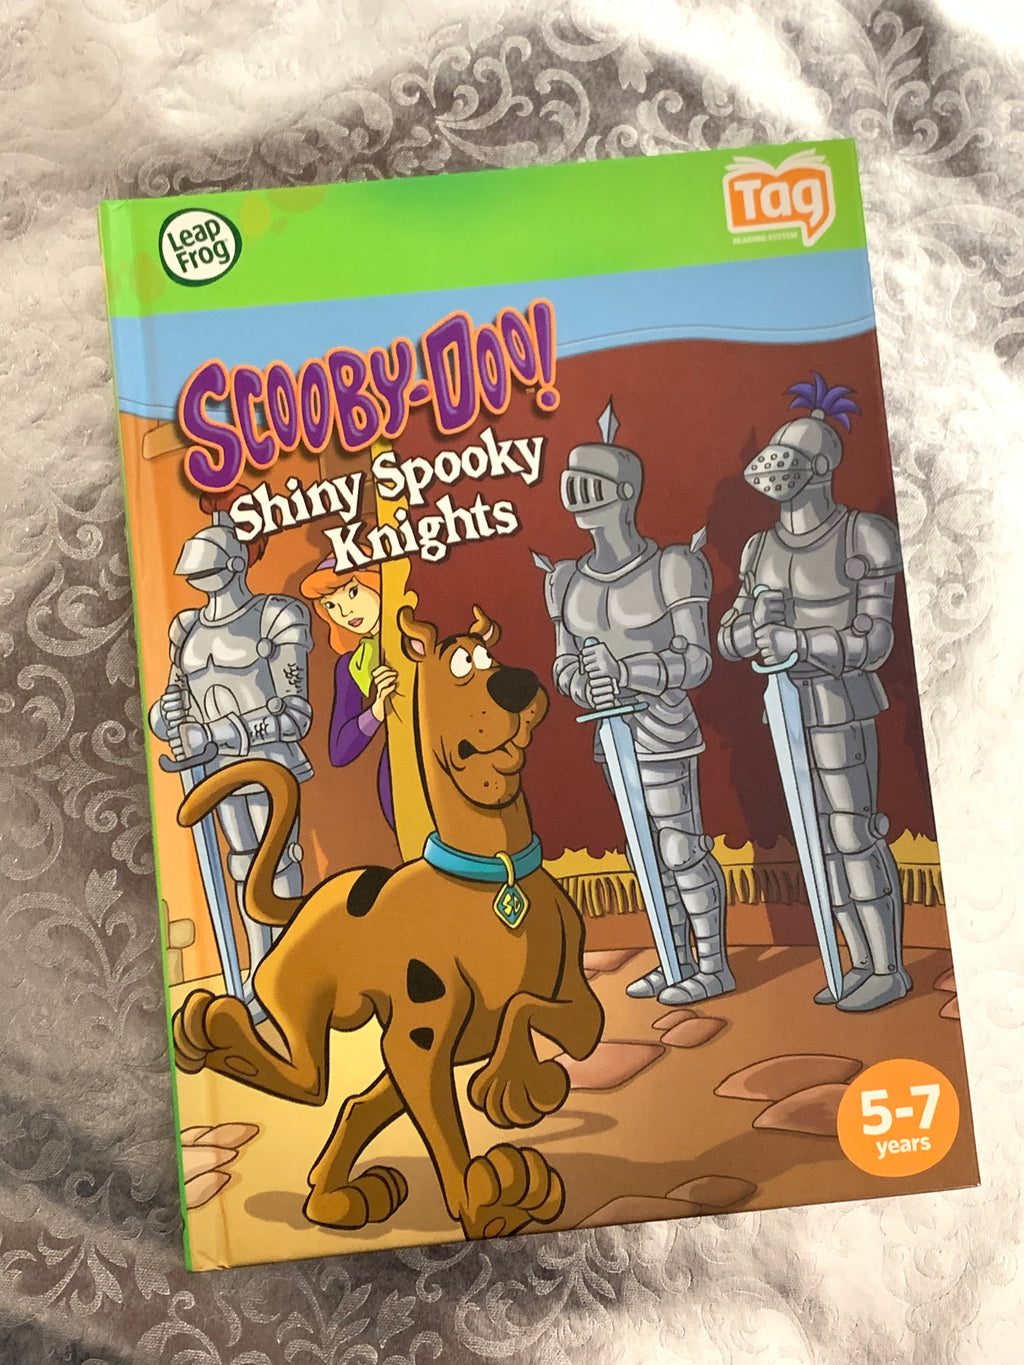 Scooby-Doo! Shiny Spooky Knights- Tag Book